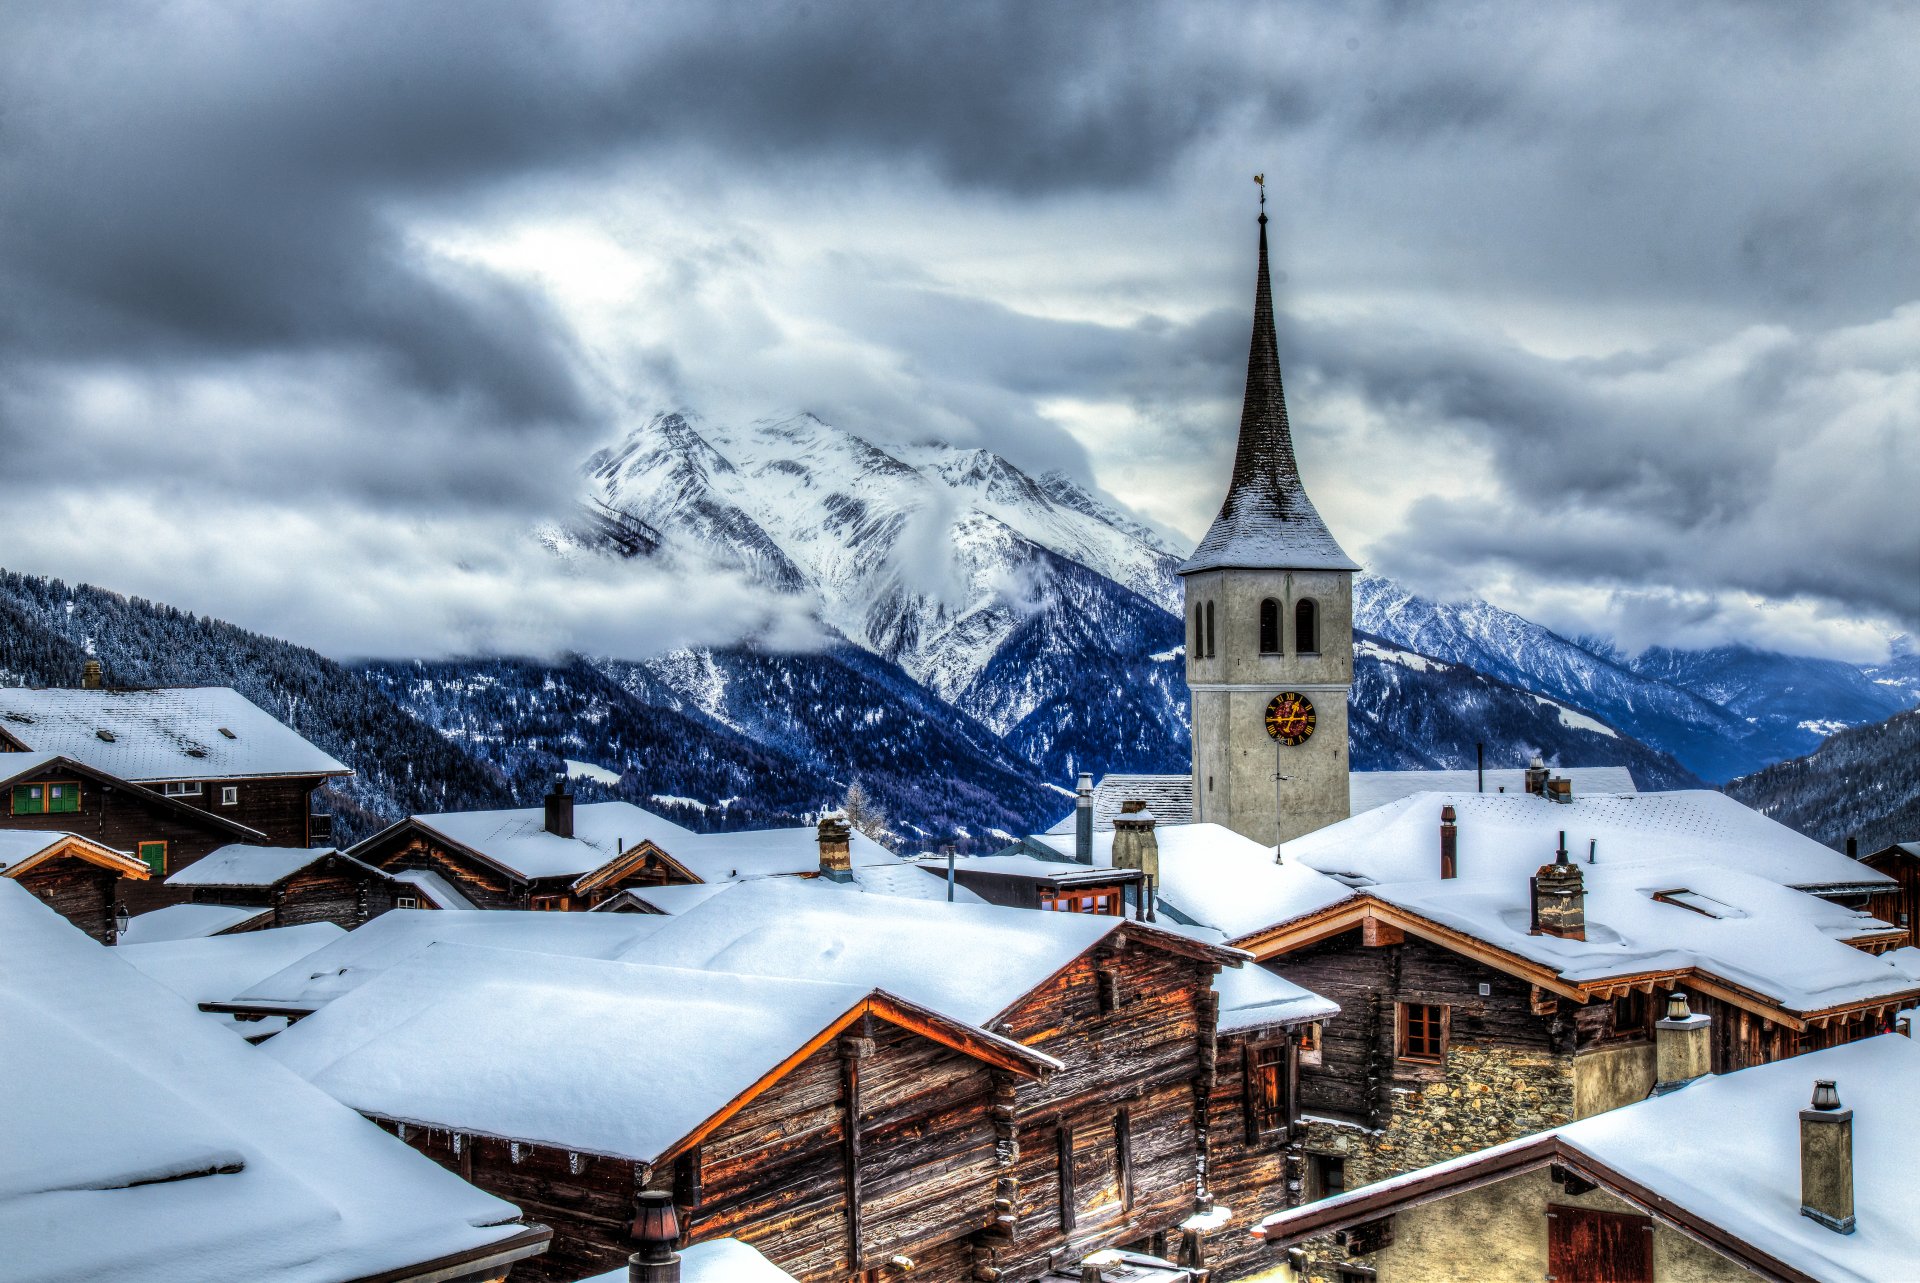 Mountain Winter Village in Switzerland by imhof patrick 4k Ultra HD Wallpaper